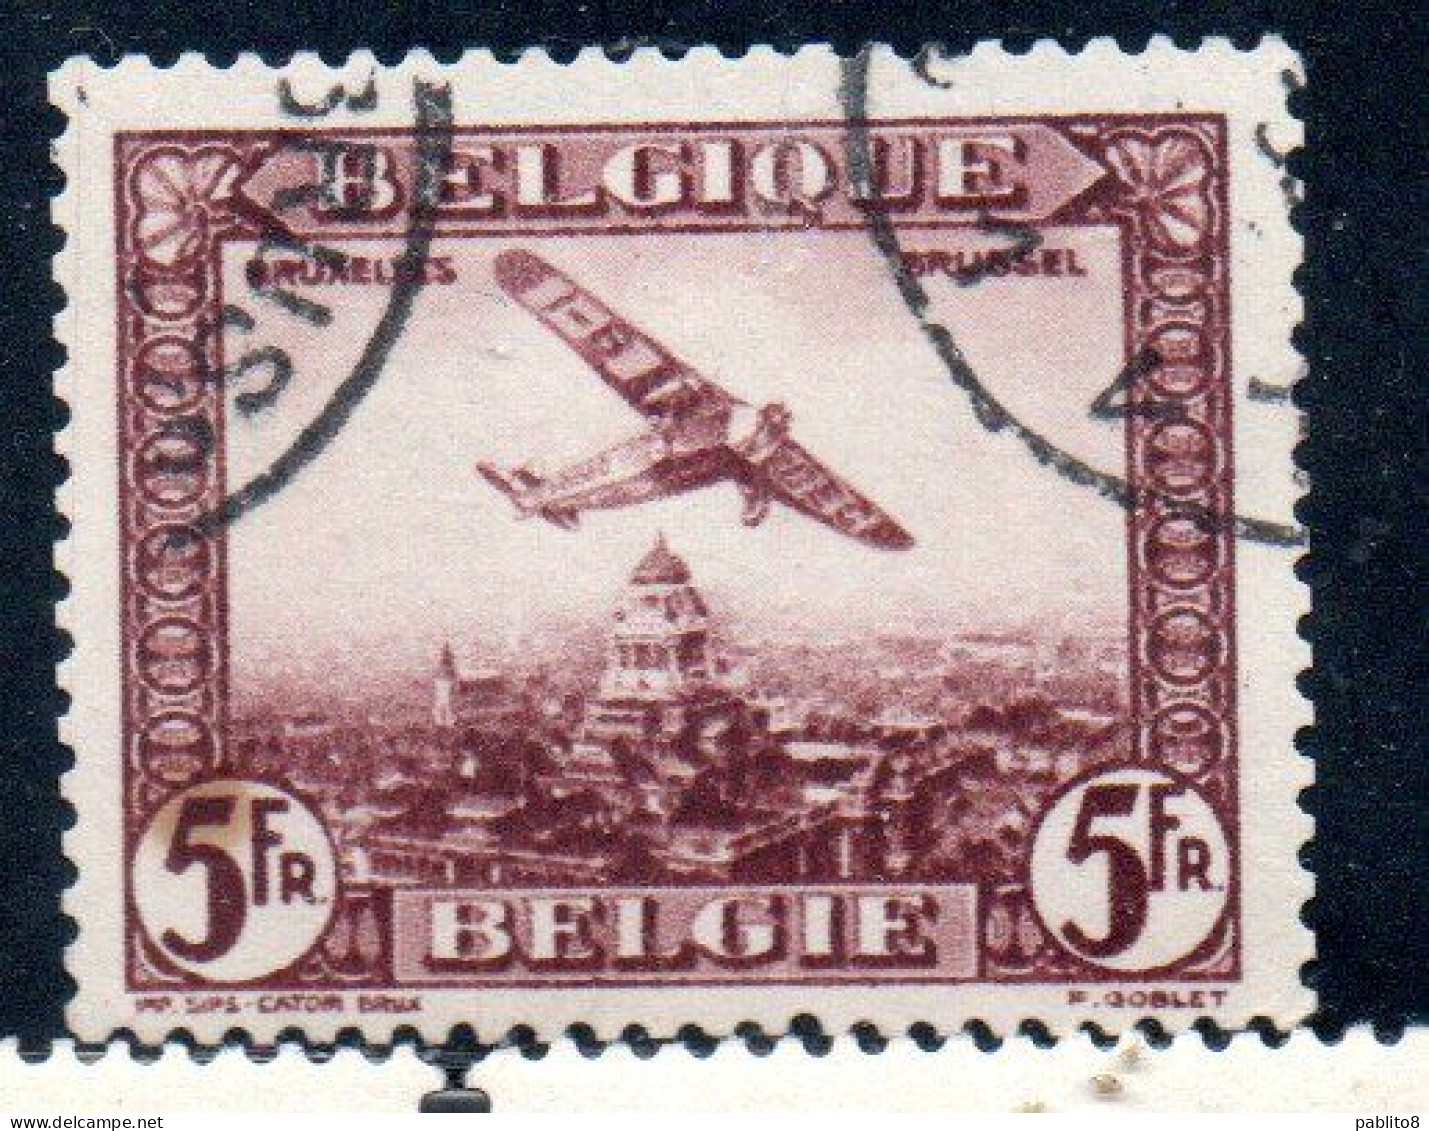 BELGIQUE BELGIE BELGIO BELGIUM 1930 AIR POST MAIL STAMP AIRMAIL FOKKER FVII/3m OVER BRUSSELS 5fr USED OBLITERE' USATO - Oblitérés